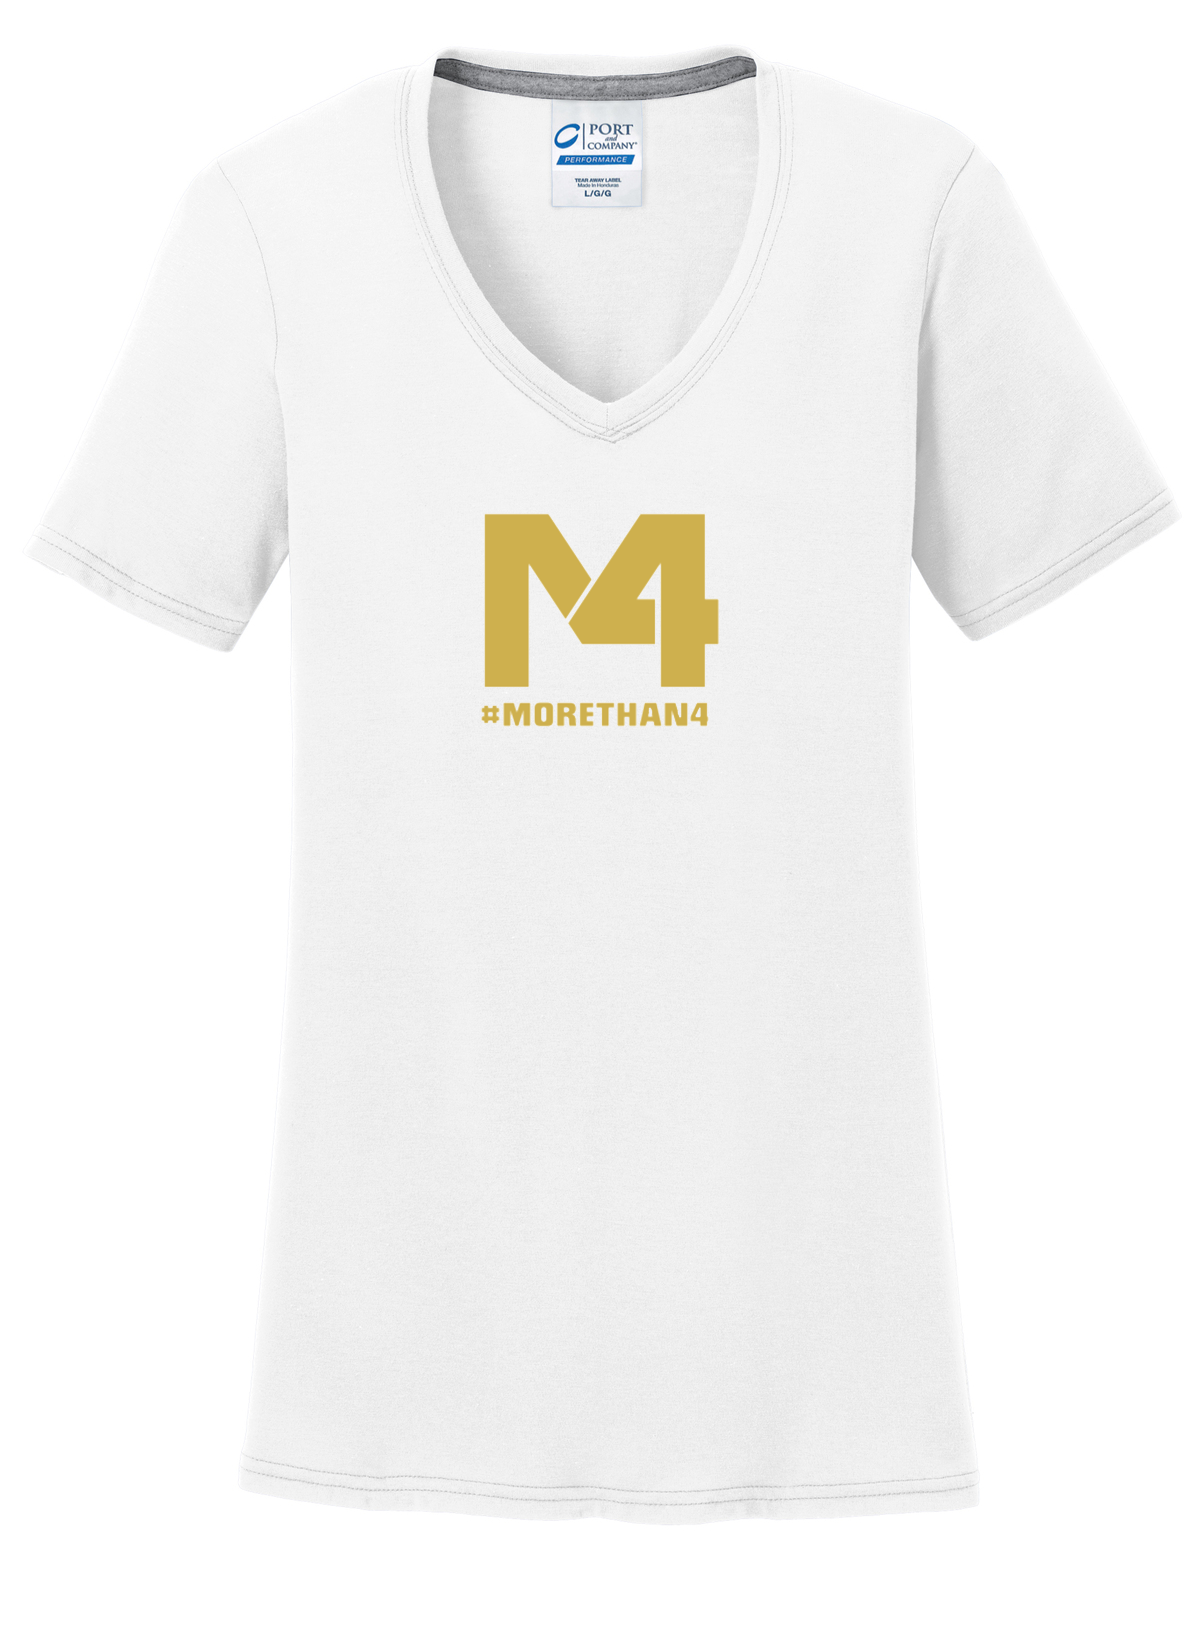 M4 Logo Women's T-Shirt